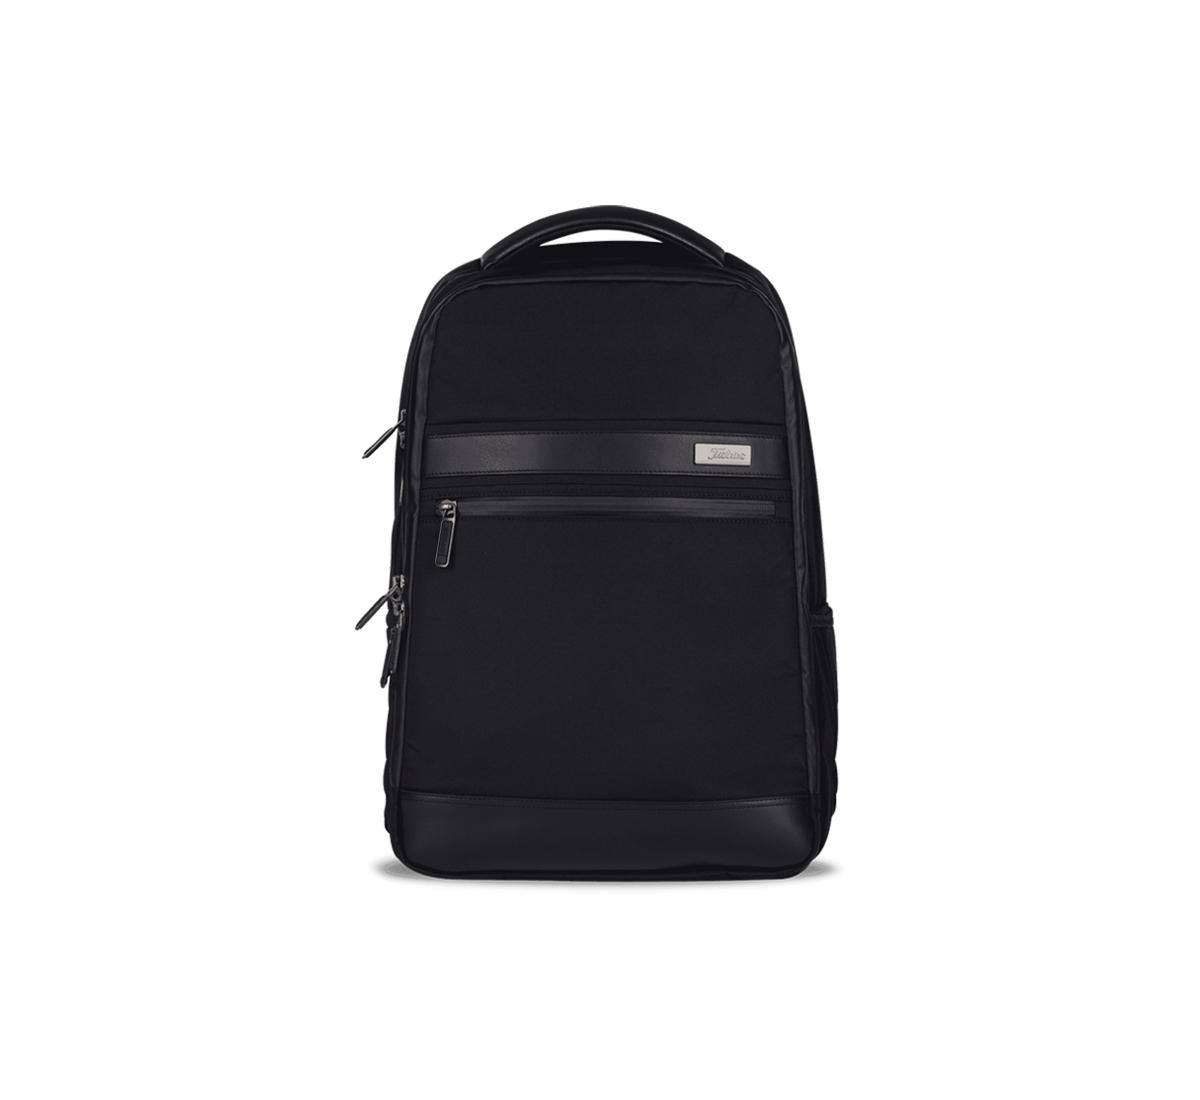 Professional Backpack | Titleist Travel Gear | Titleist